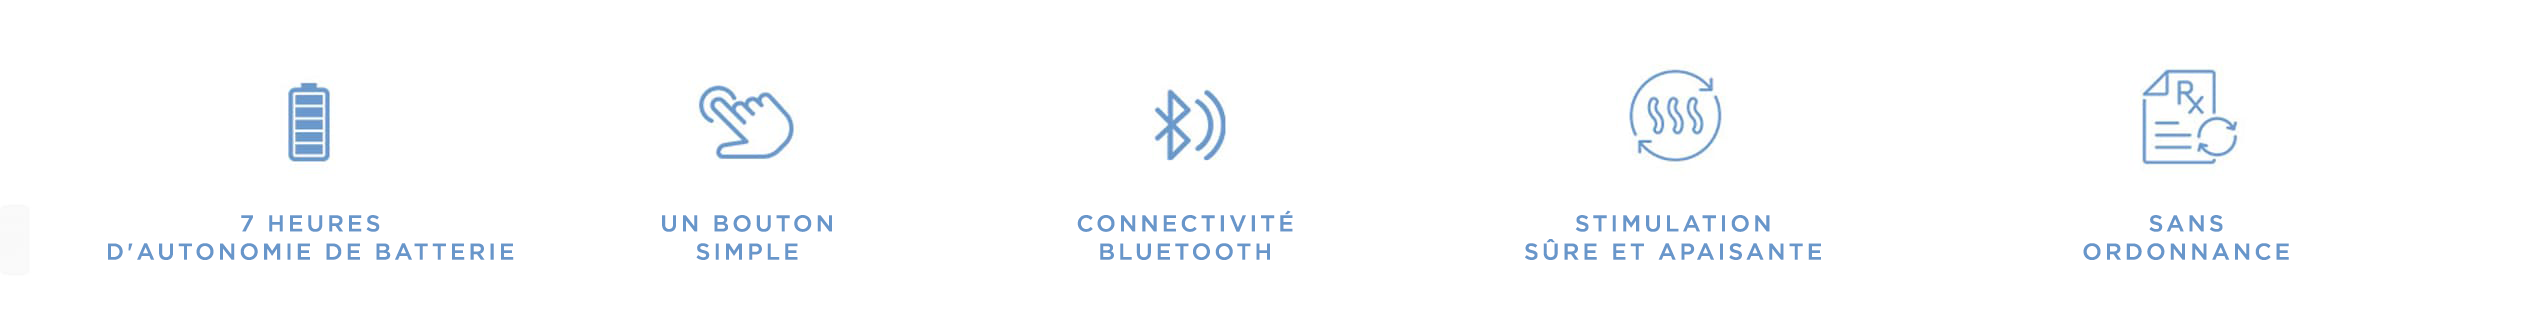 7 heures d’autonomie de batterie. Fonctionne avec un seul bouton. Connectivité Bluetooth. Stimulation sûre et apaisante Sans ordonnance.